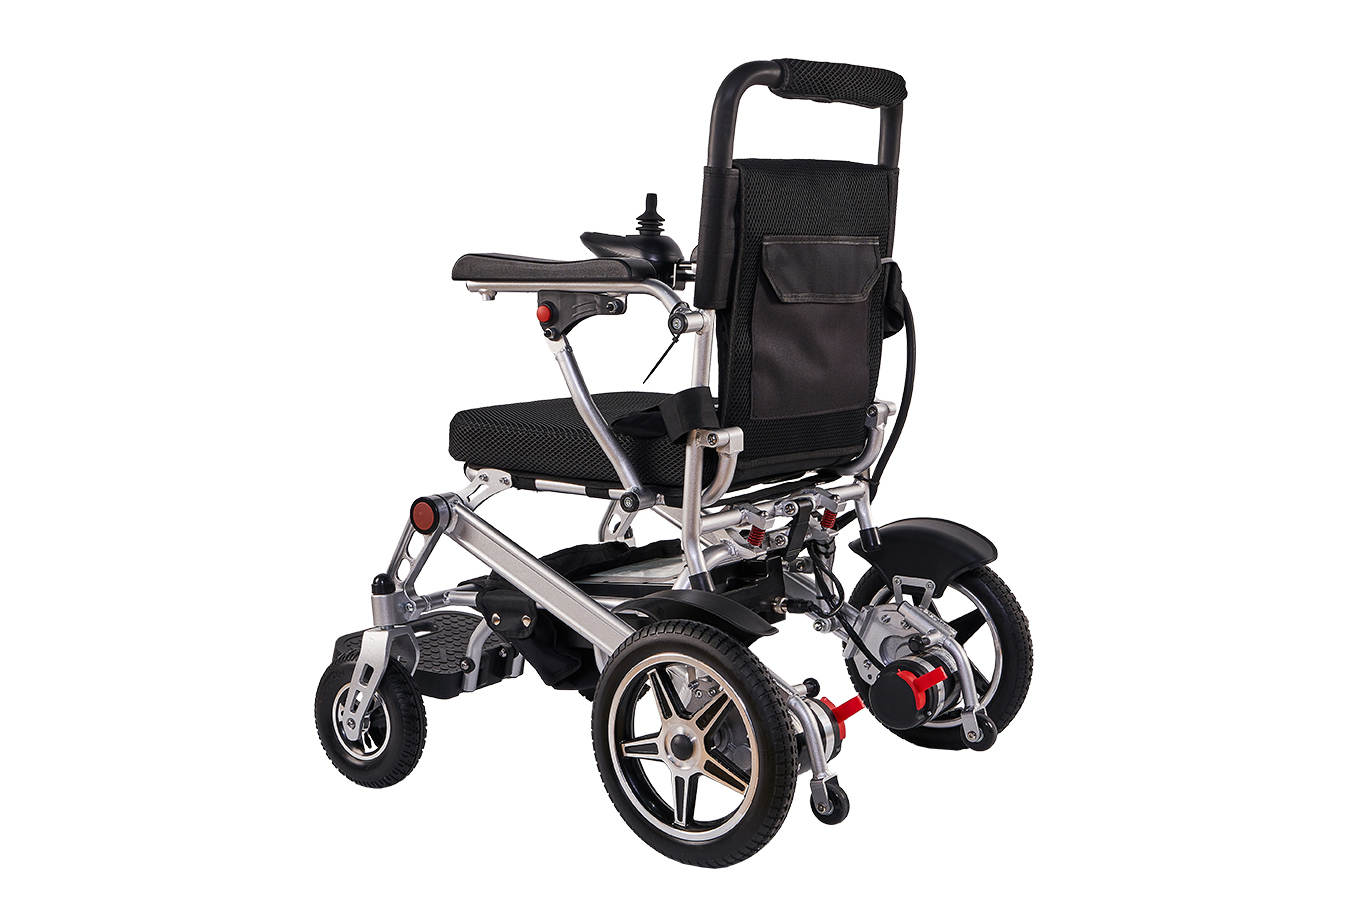 Вы когда-нибудь видели такую ​​электрическую инвалидную коляску? Электрические инвалидные коляски, меняющие правила игры: портативные и легкие решения для повышения мобильности